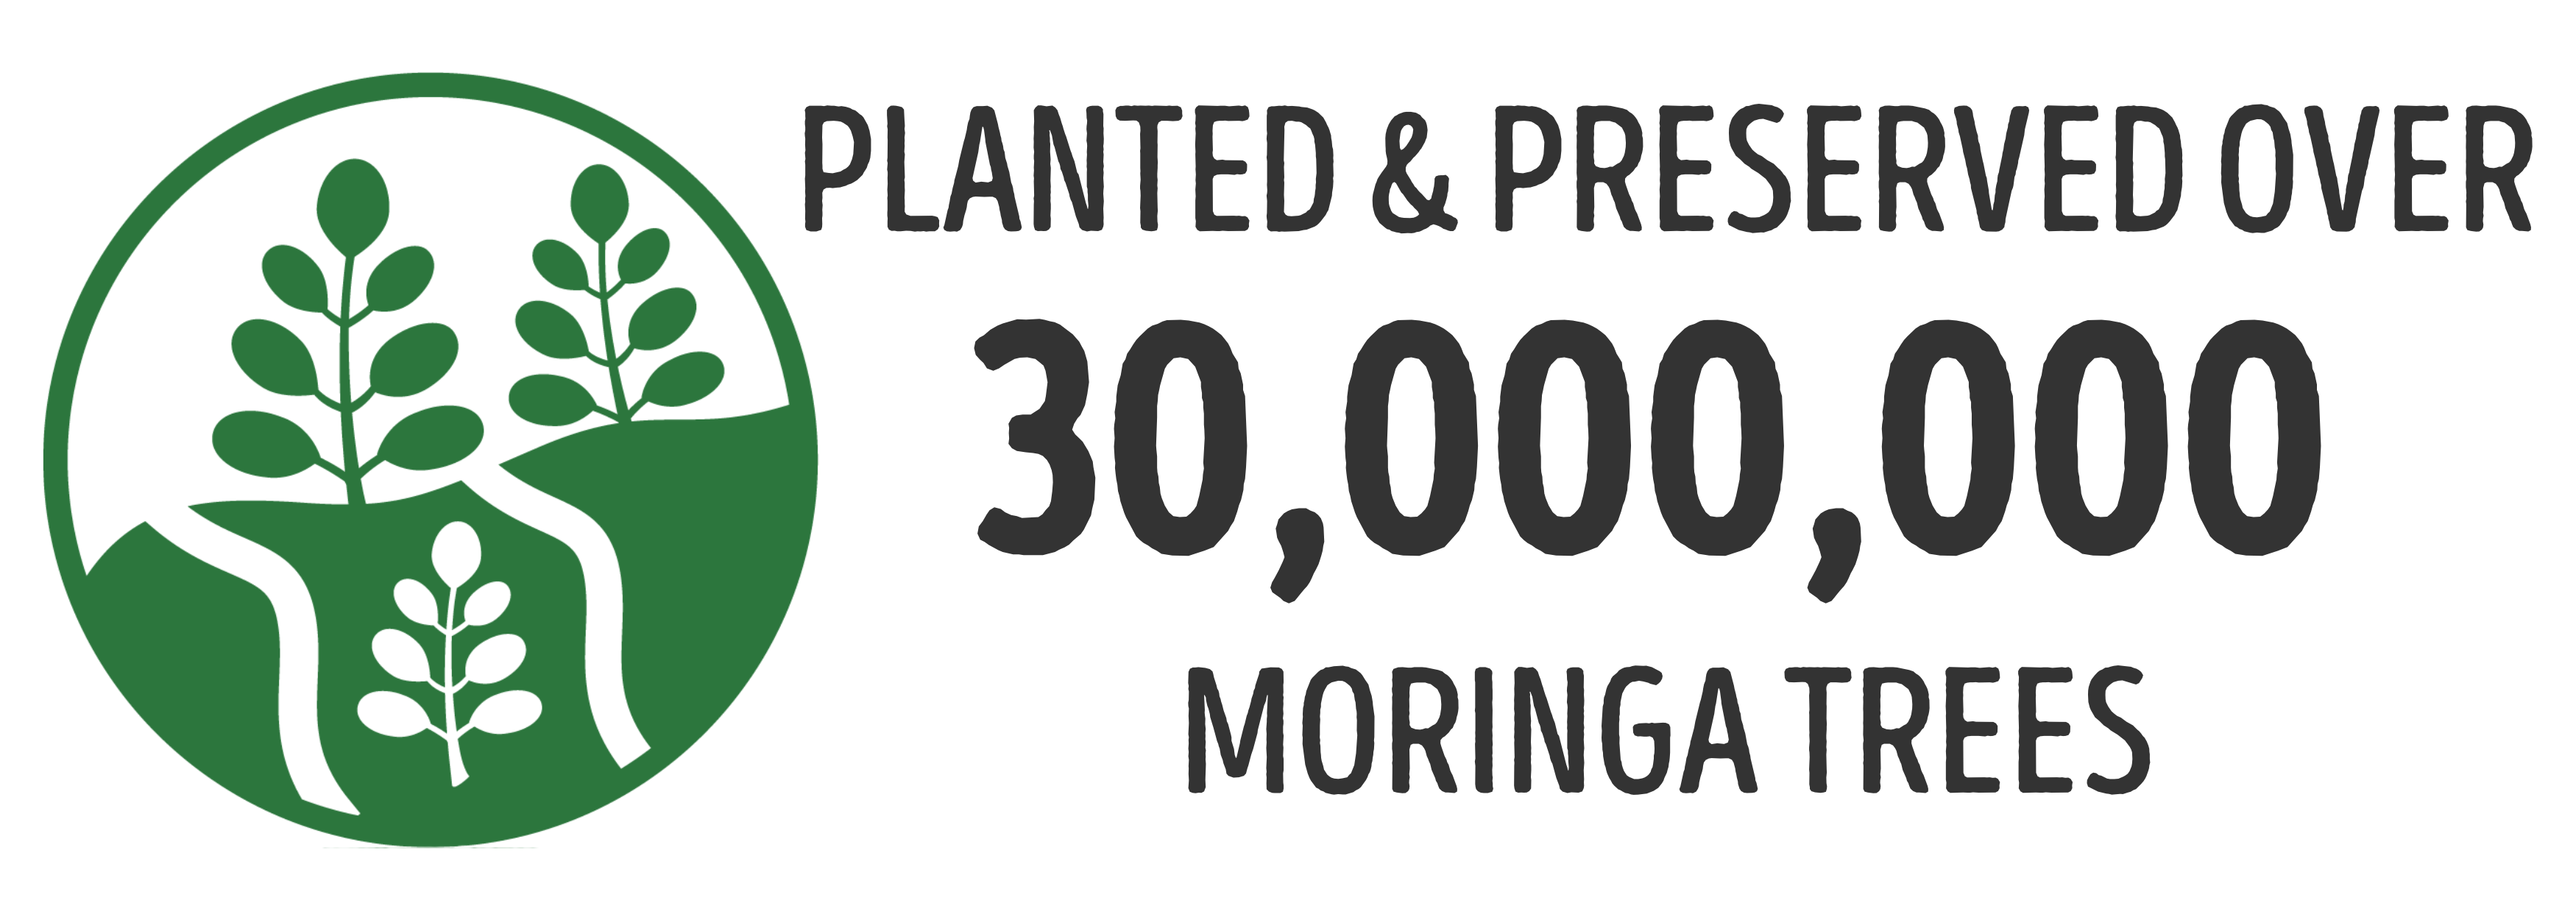 Planted over 24,600,000 Moringa Trees